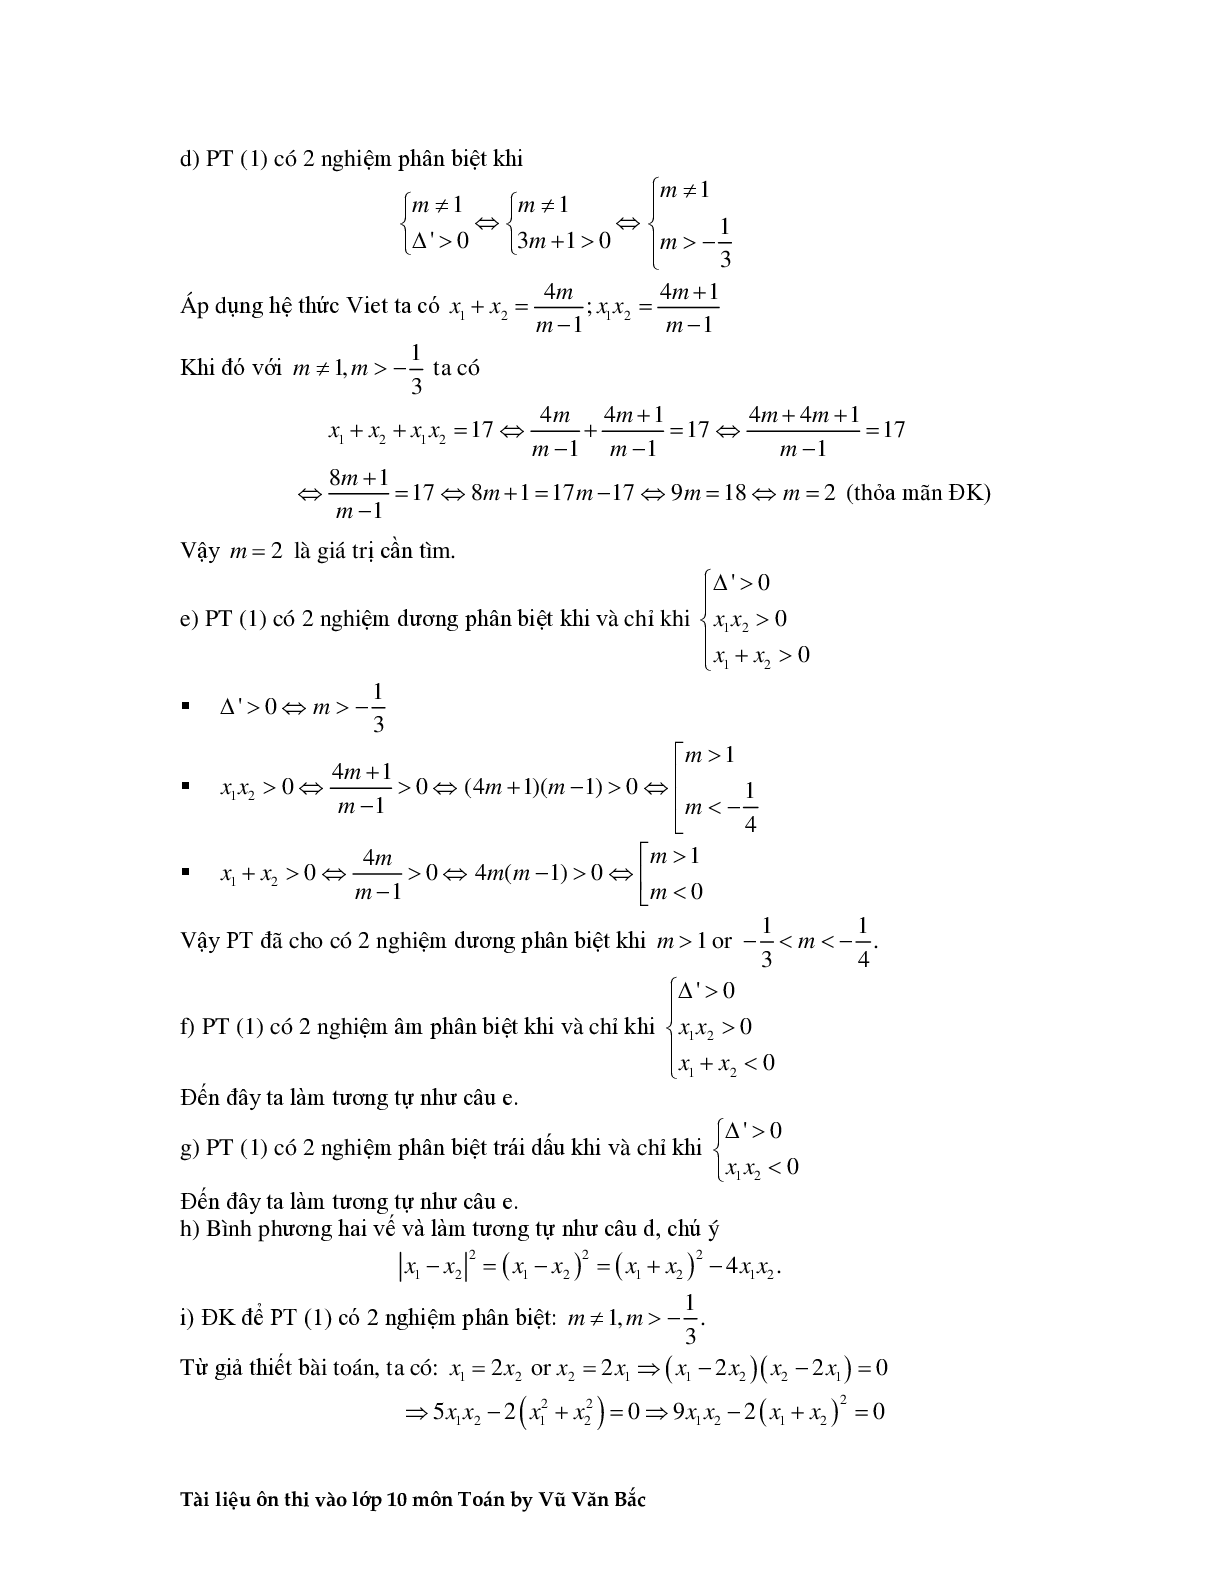 Tài liệu ôn thi vào lớp 10 môn toán (trang 10)